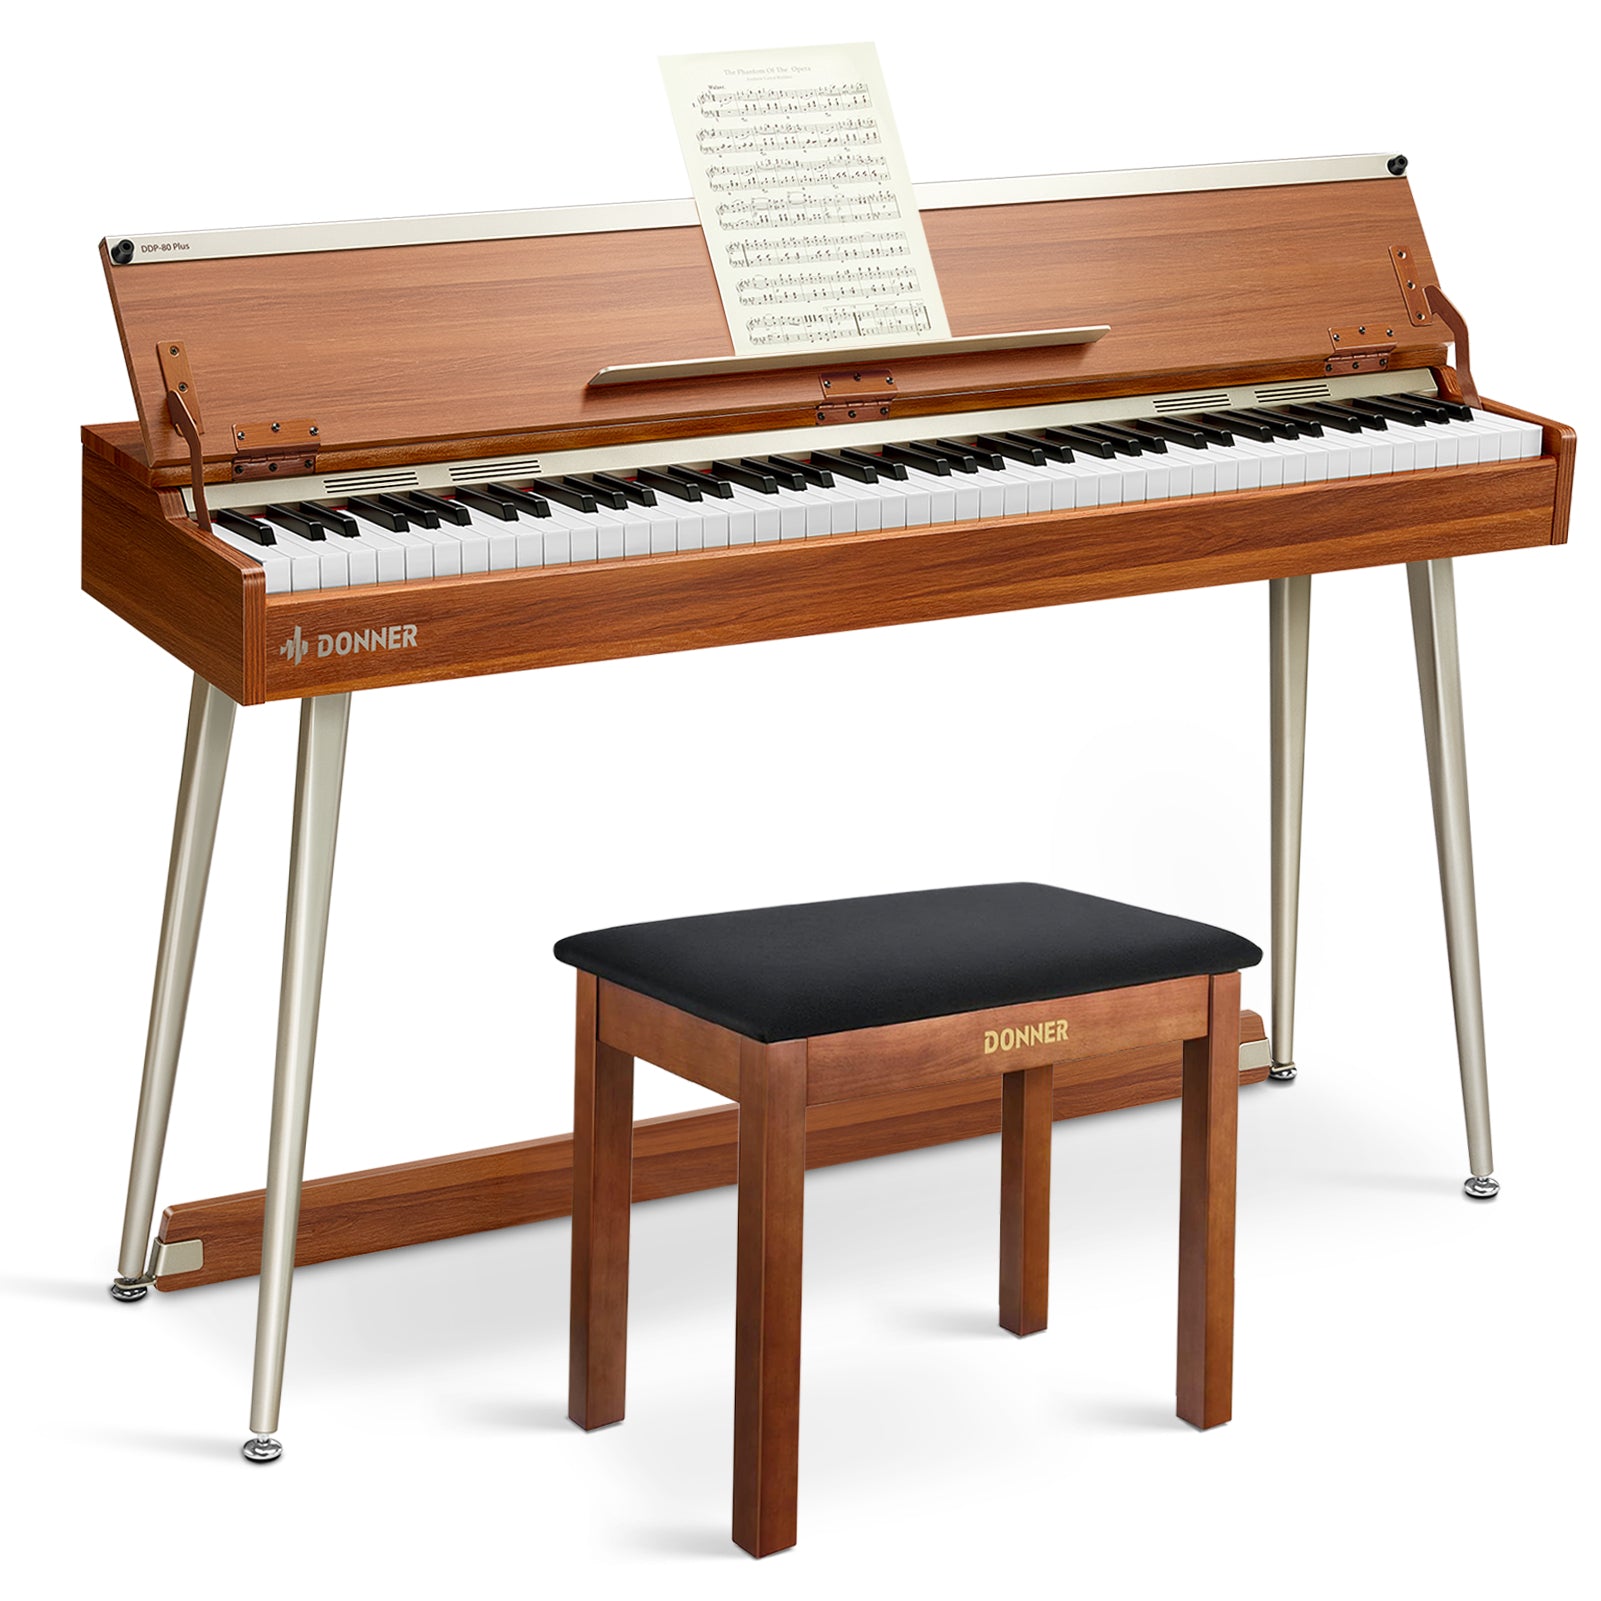 Donner DDP-80 PLUS Digitalpiano Minimalistisches Holzdesign - Piano + Brauner Klavierbank von Donner